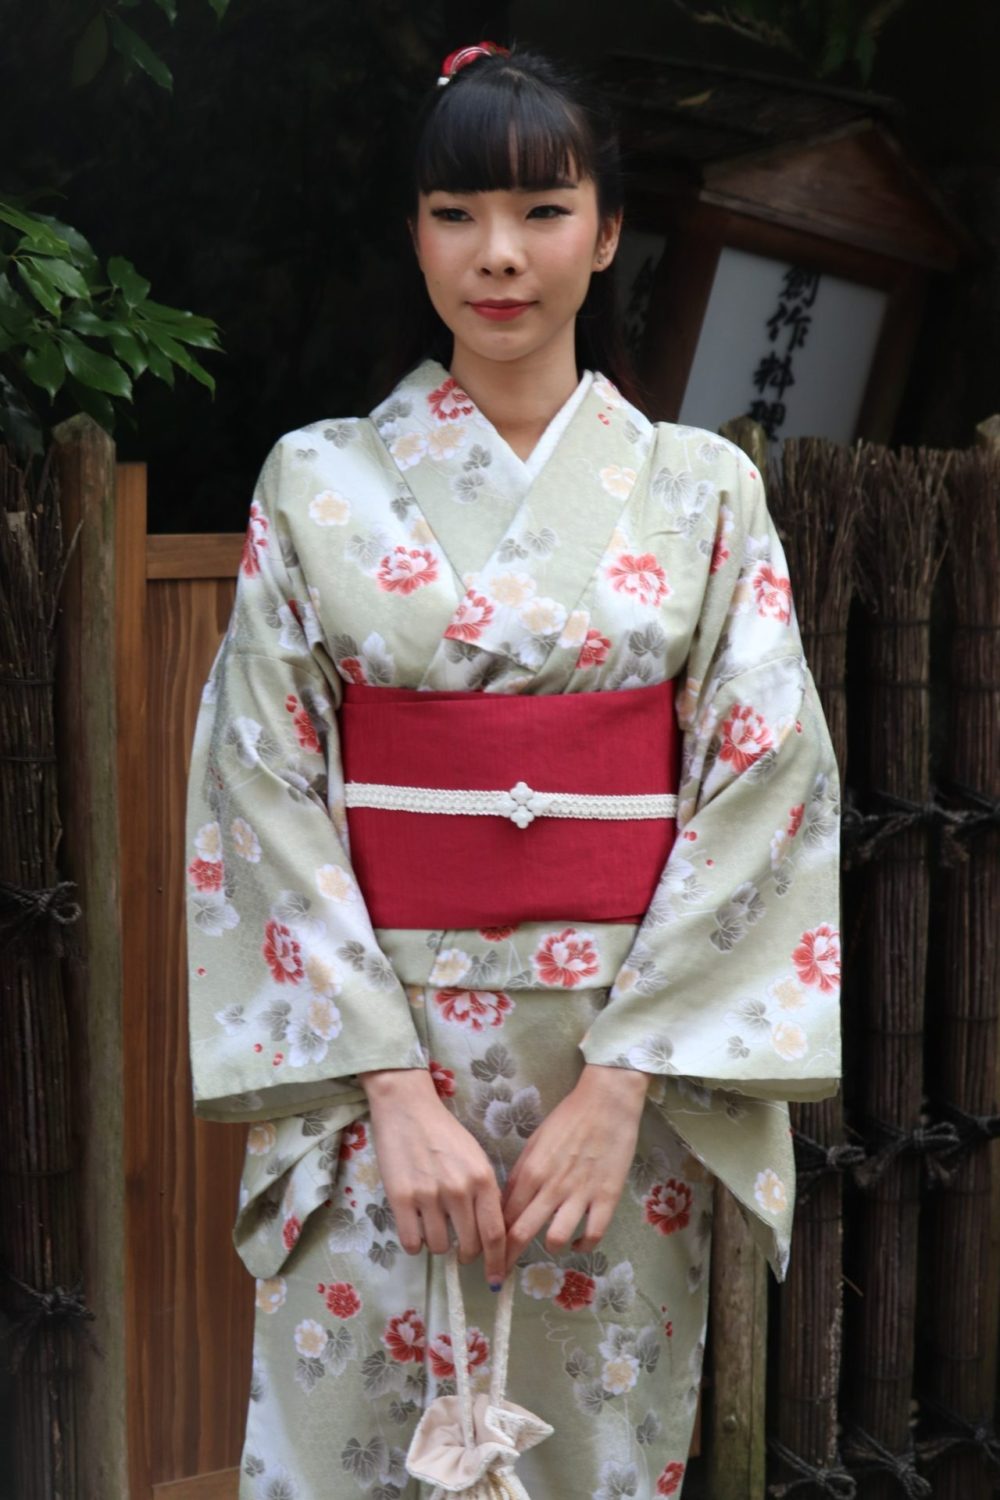 Kimono and Kimono Rental Services in Japan